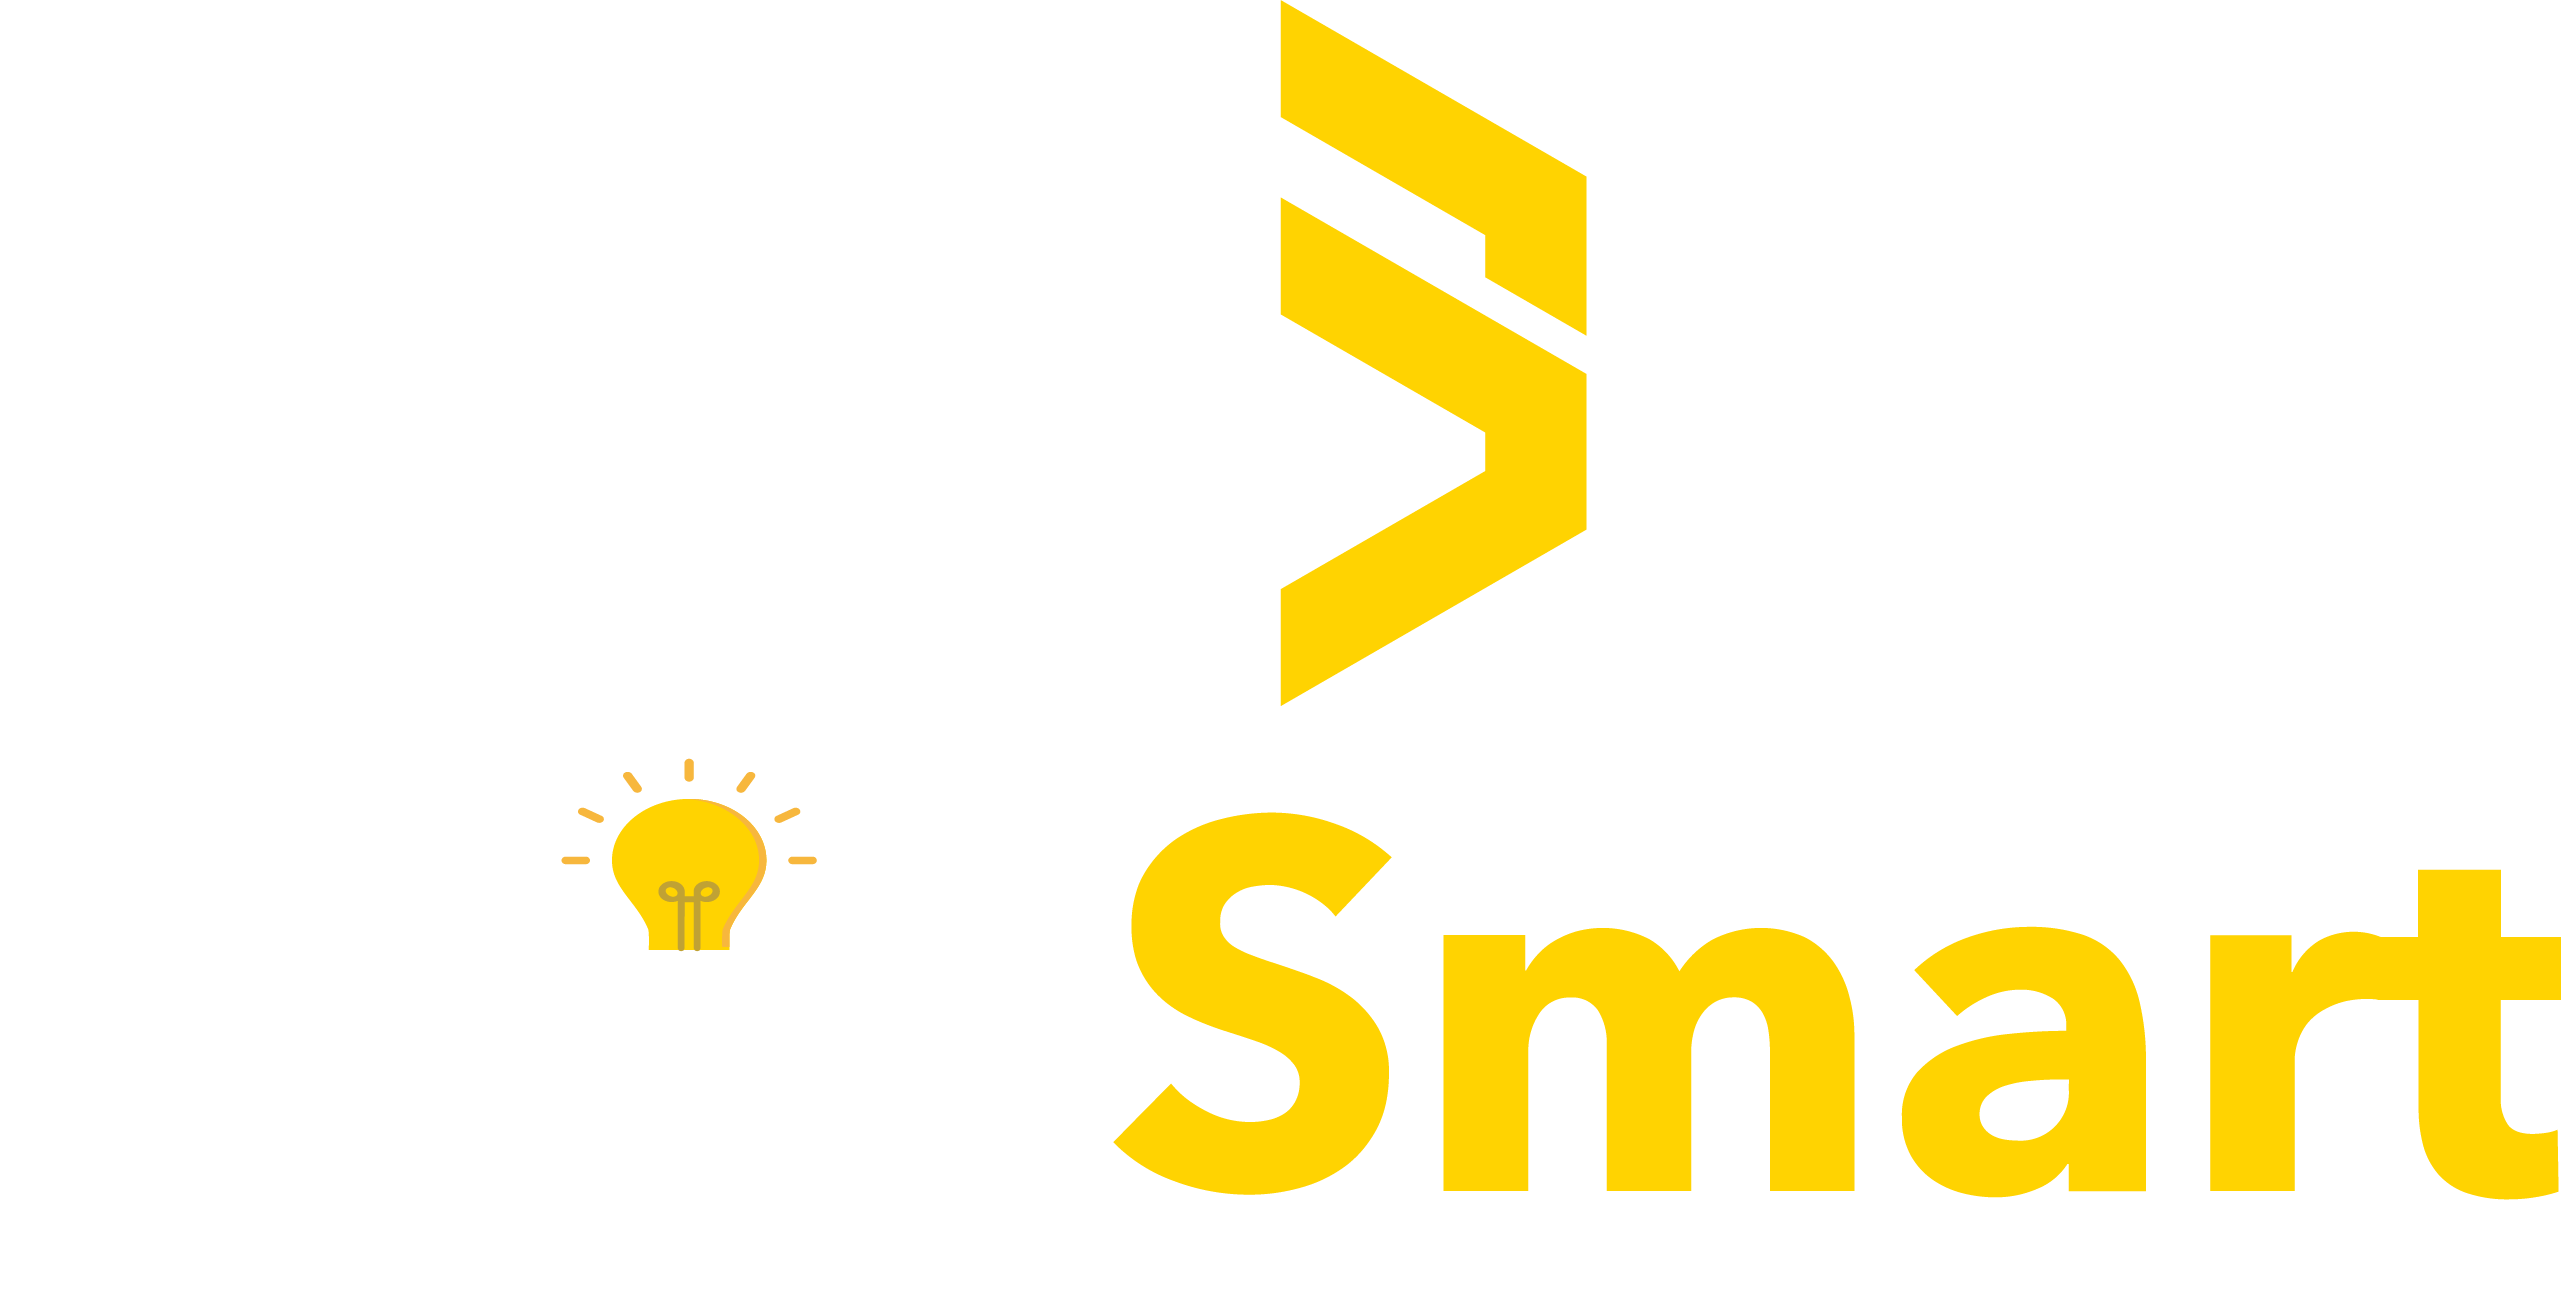 ShipSmart™